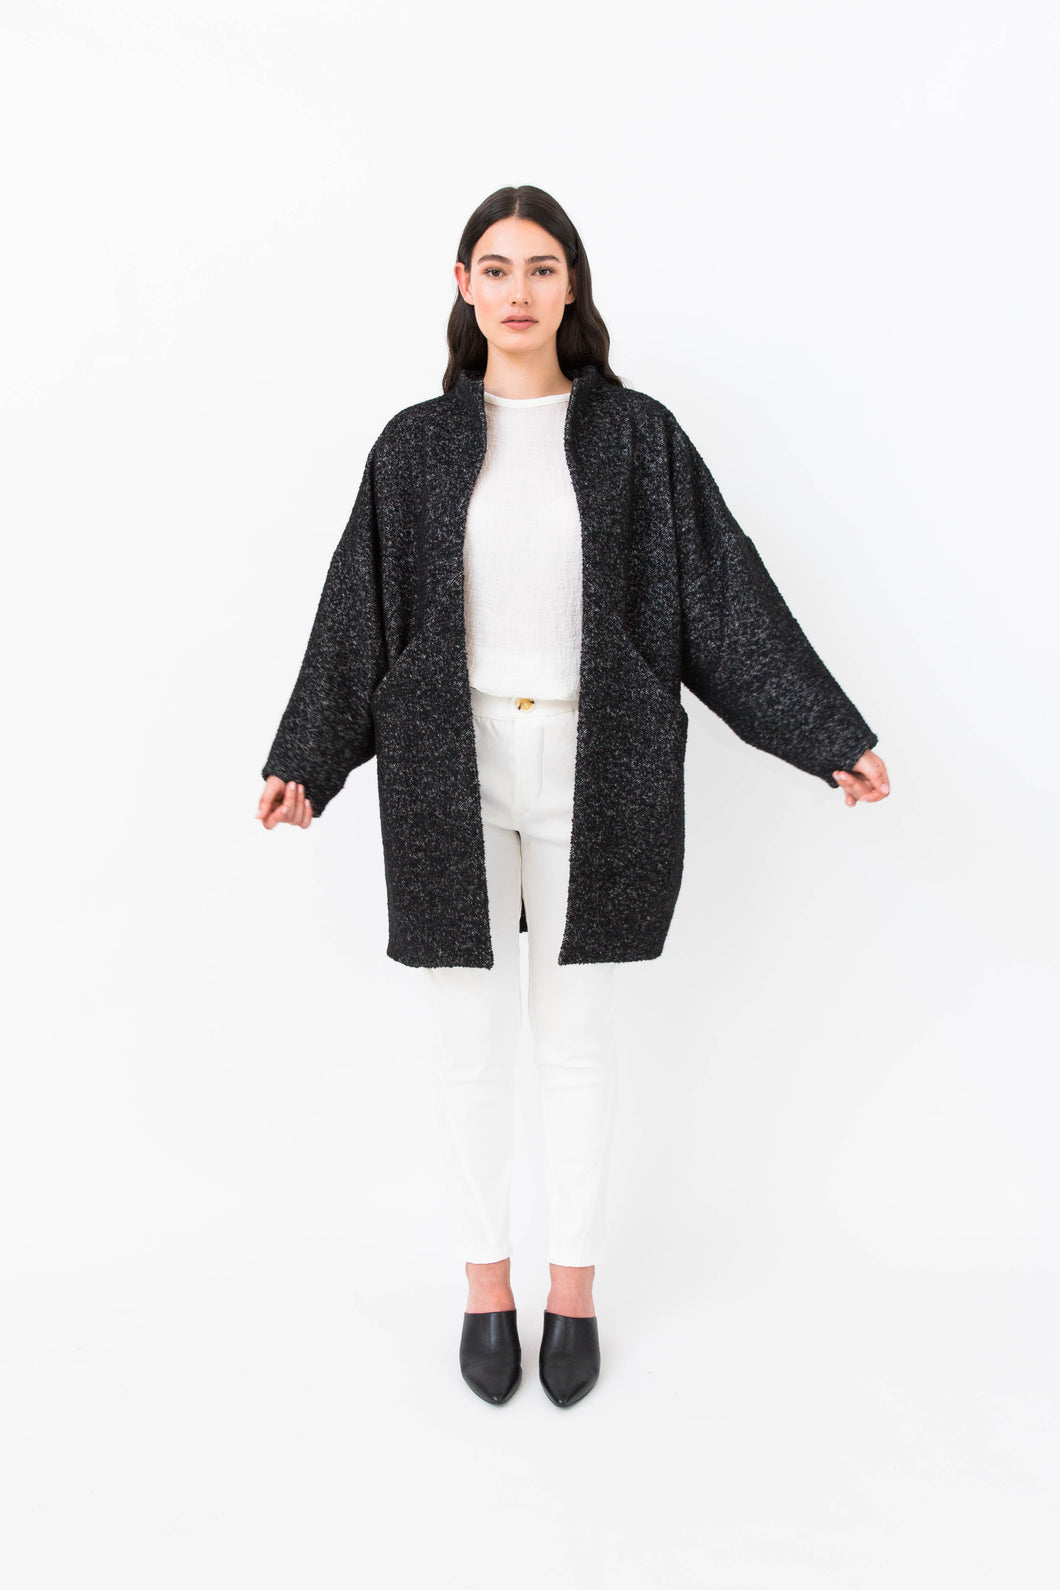 Lady wears Nova coat in a wool fabric